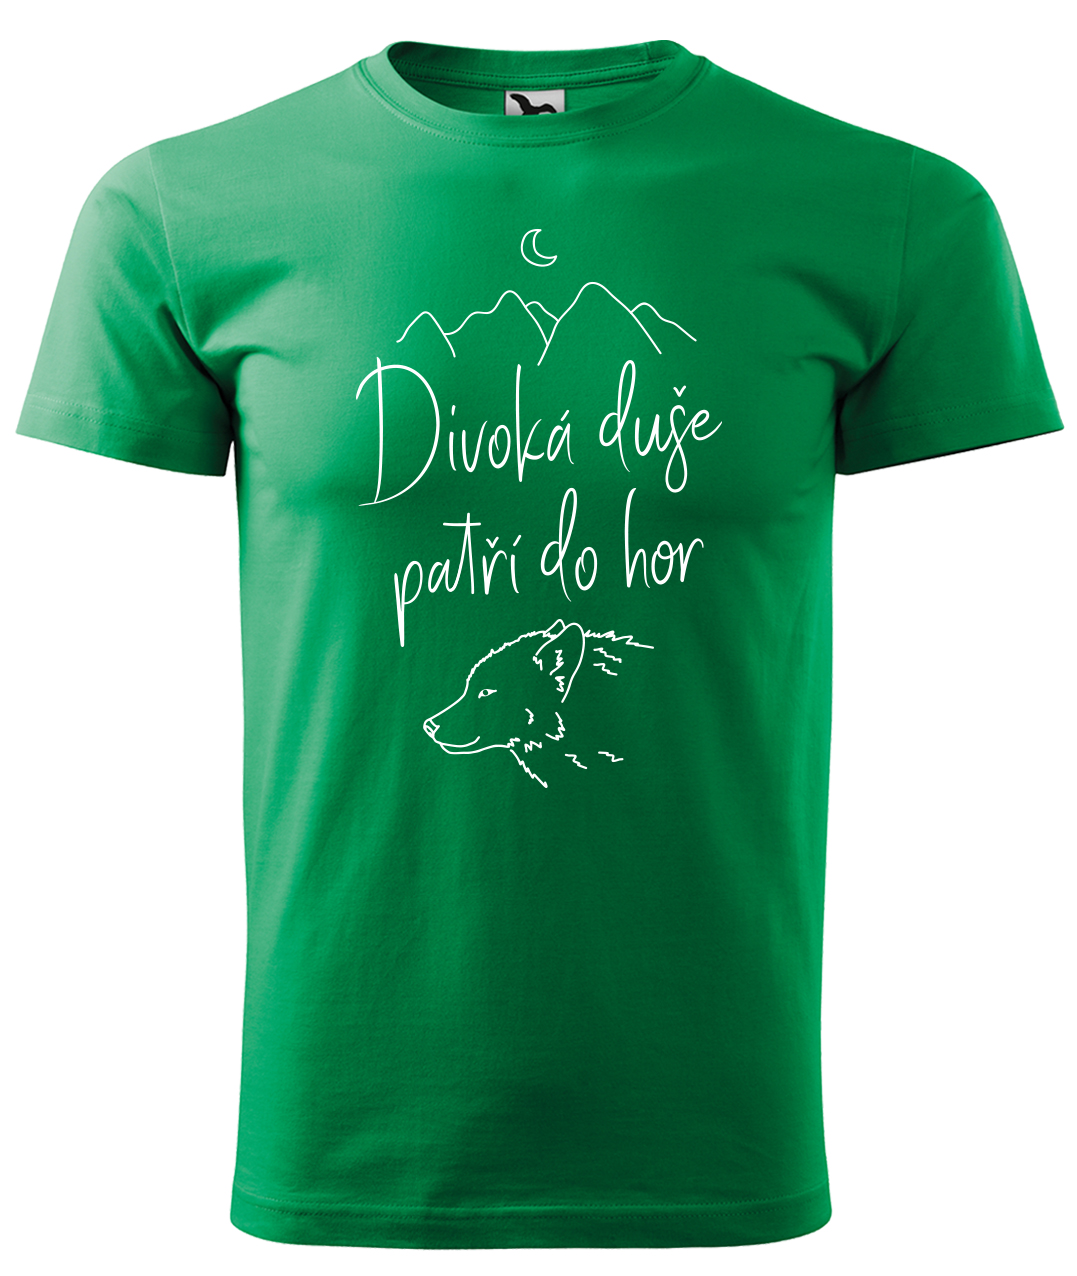 Dětské tričko na hory - Divoká duše patří do hor Velikost: 4 roky / 110 cm, Barva: Středně zelená (16), Délka rukávu: Krátký rukáv